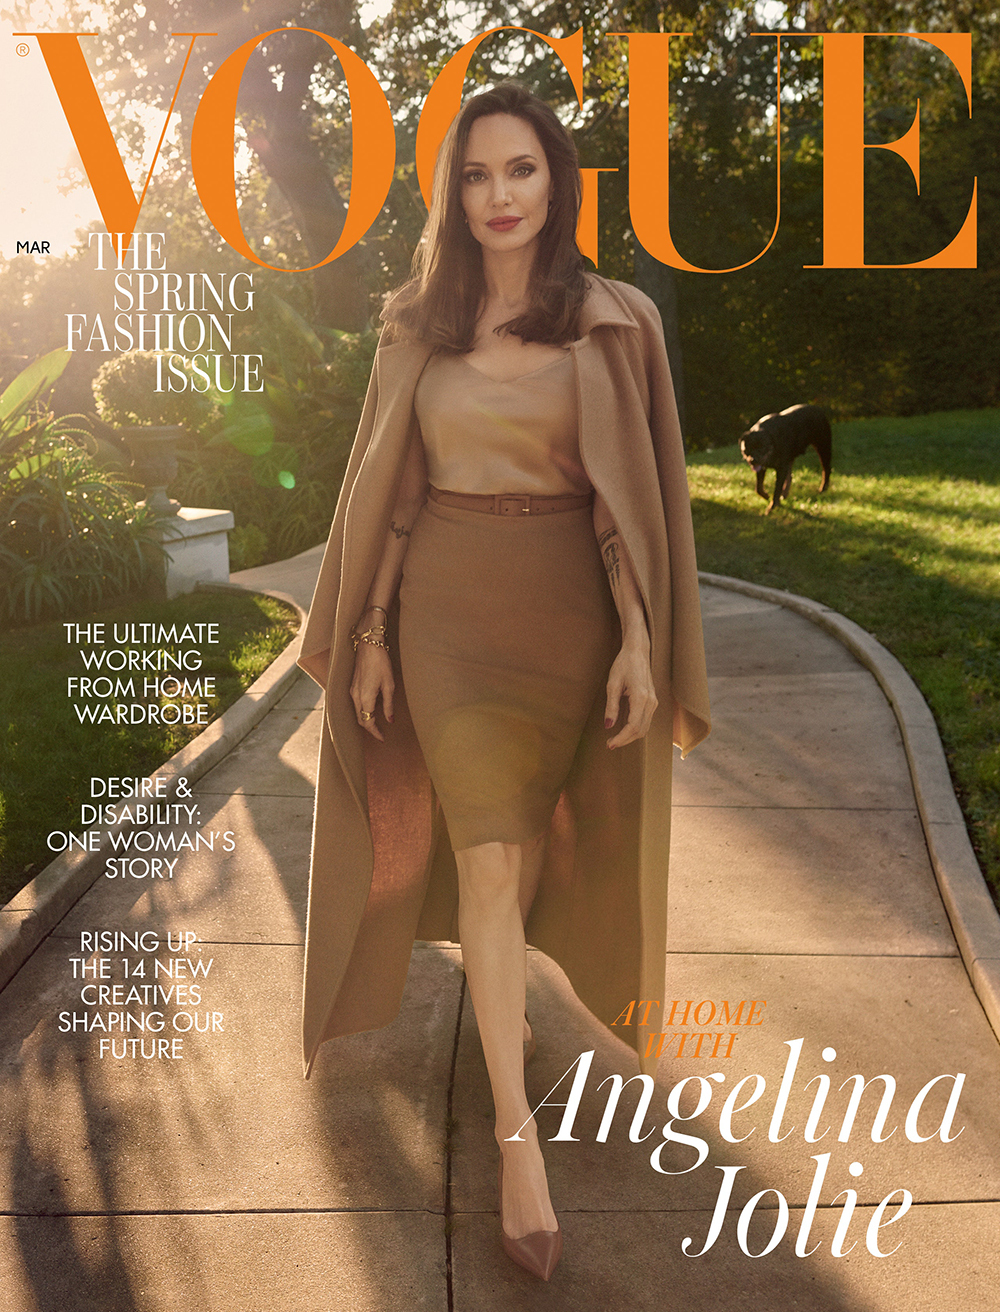 Dù là một người siêu giàu nhưng Angelina Jolie có phong cách ăn mặc cực kỳ giản dị và tiết kiệm.